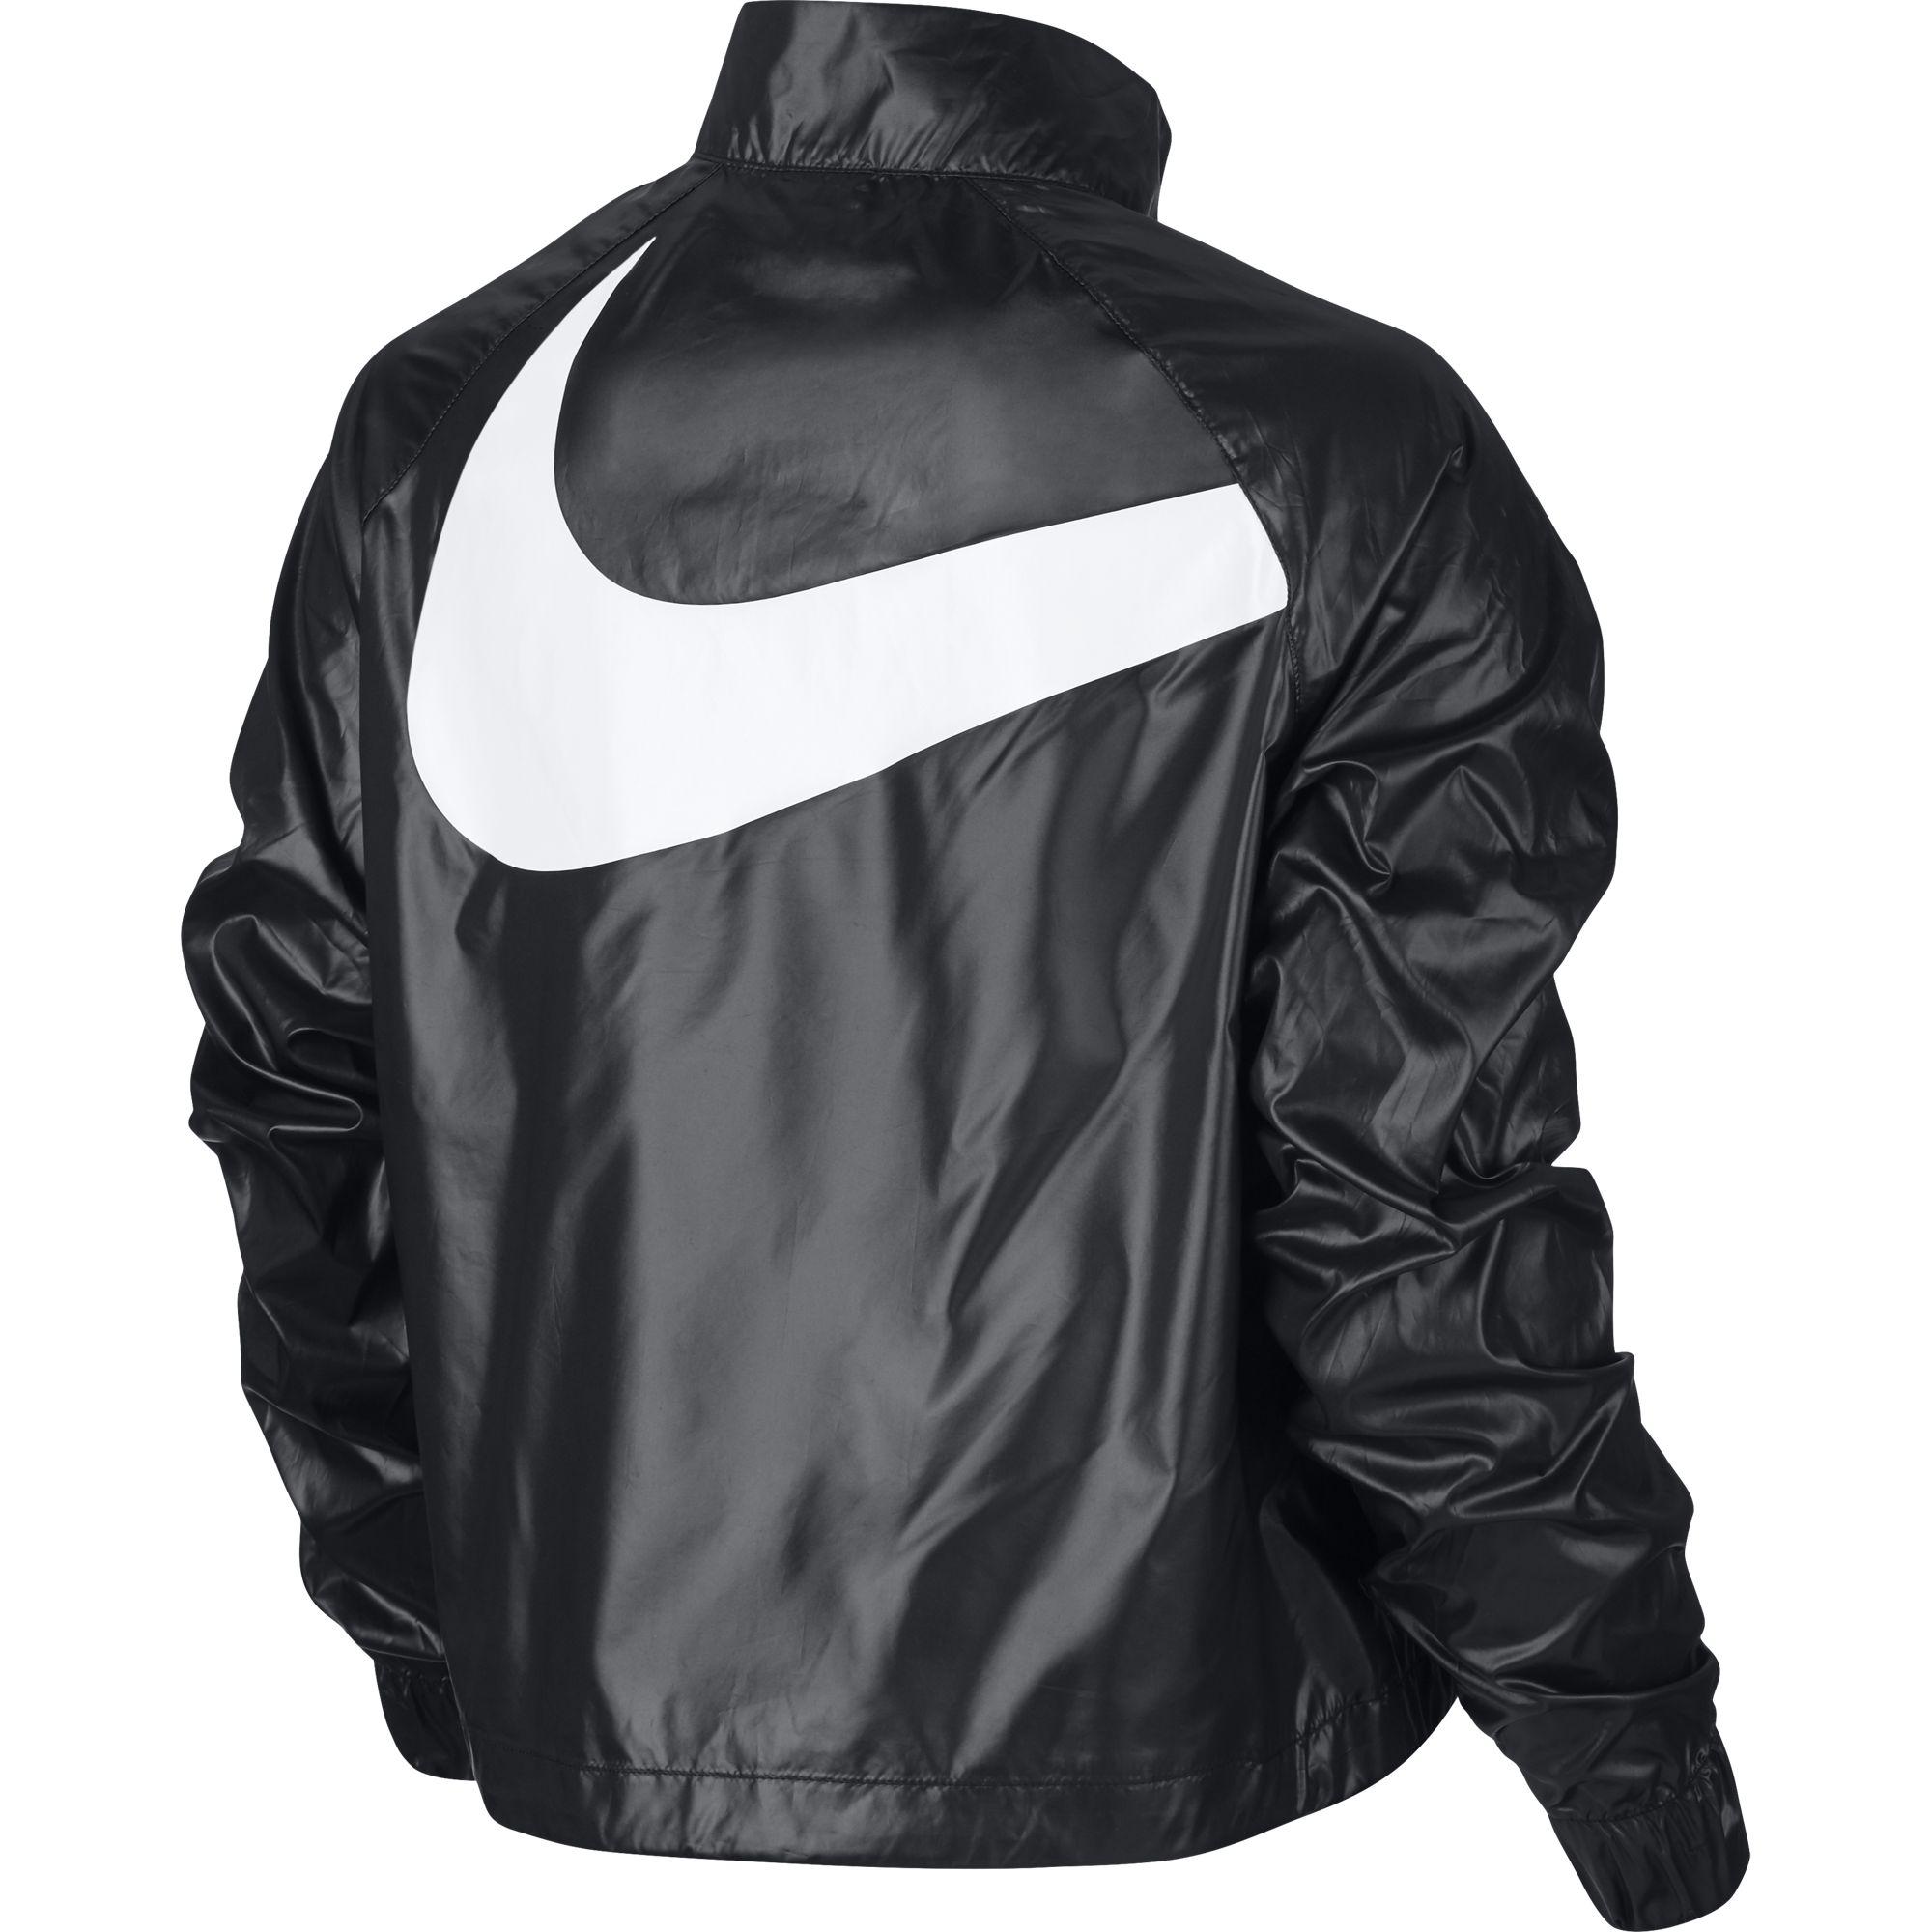 Nike Womens Sportswear Jacket - Black - Tennisnuts.com